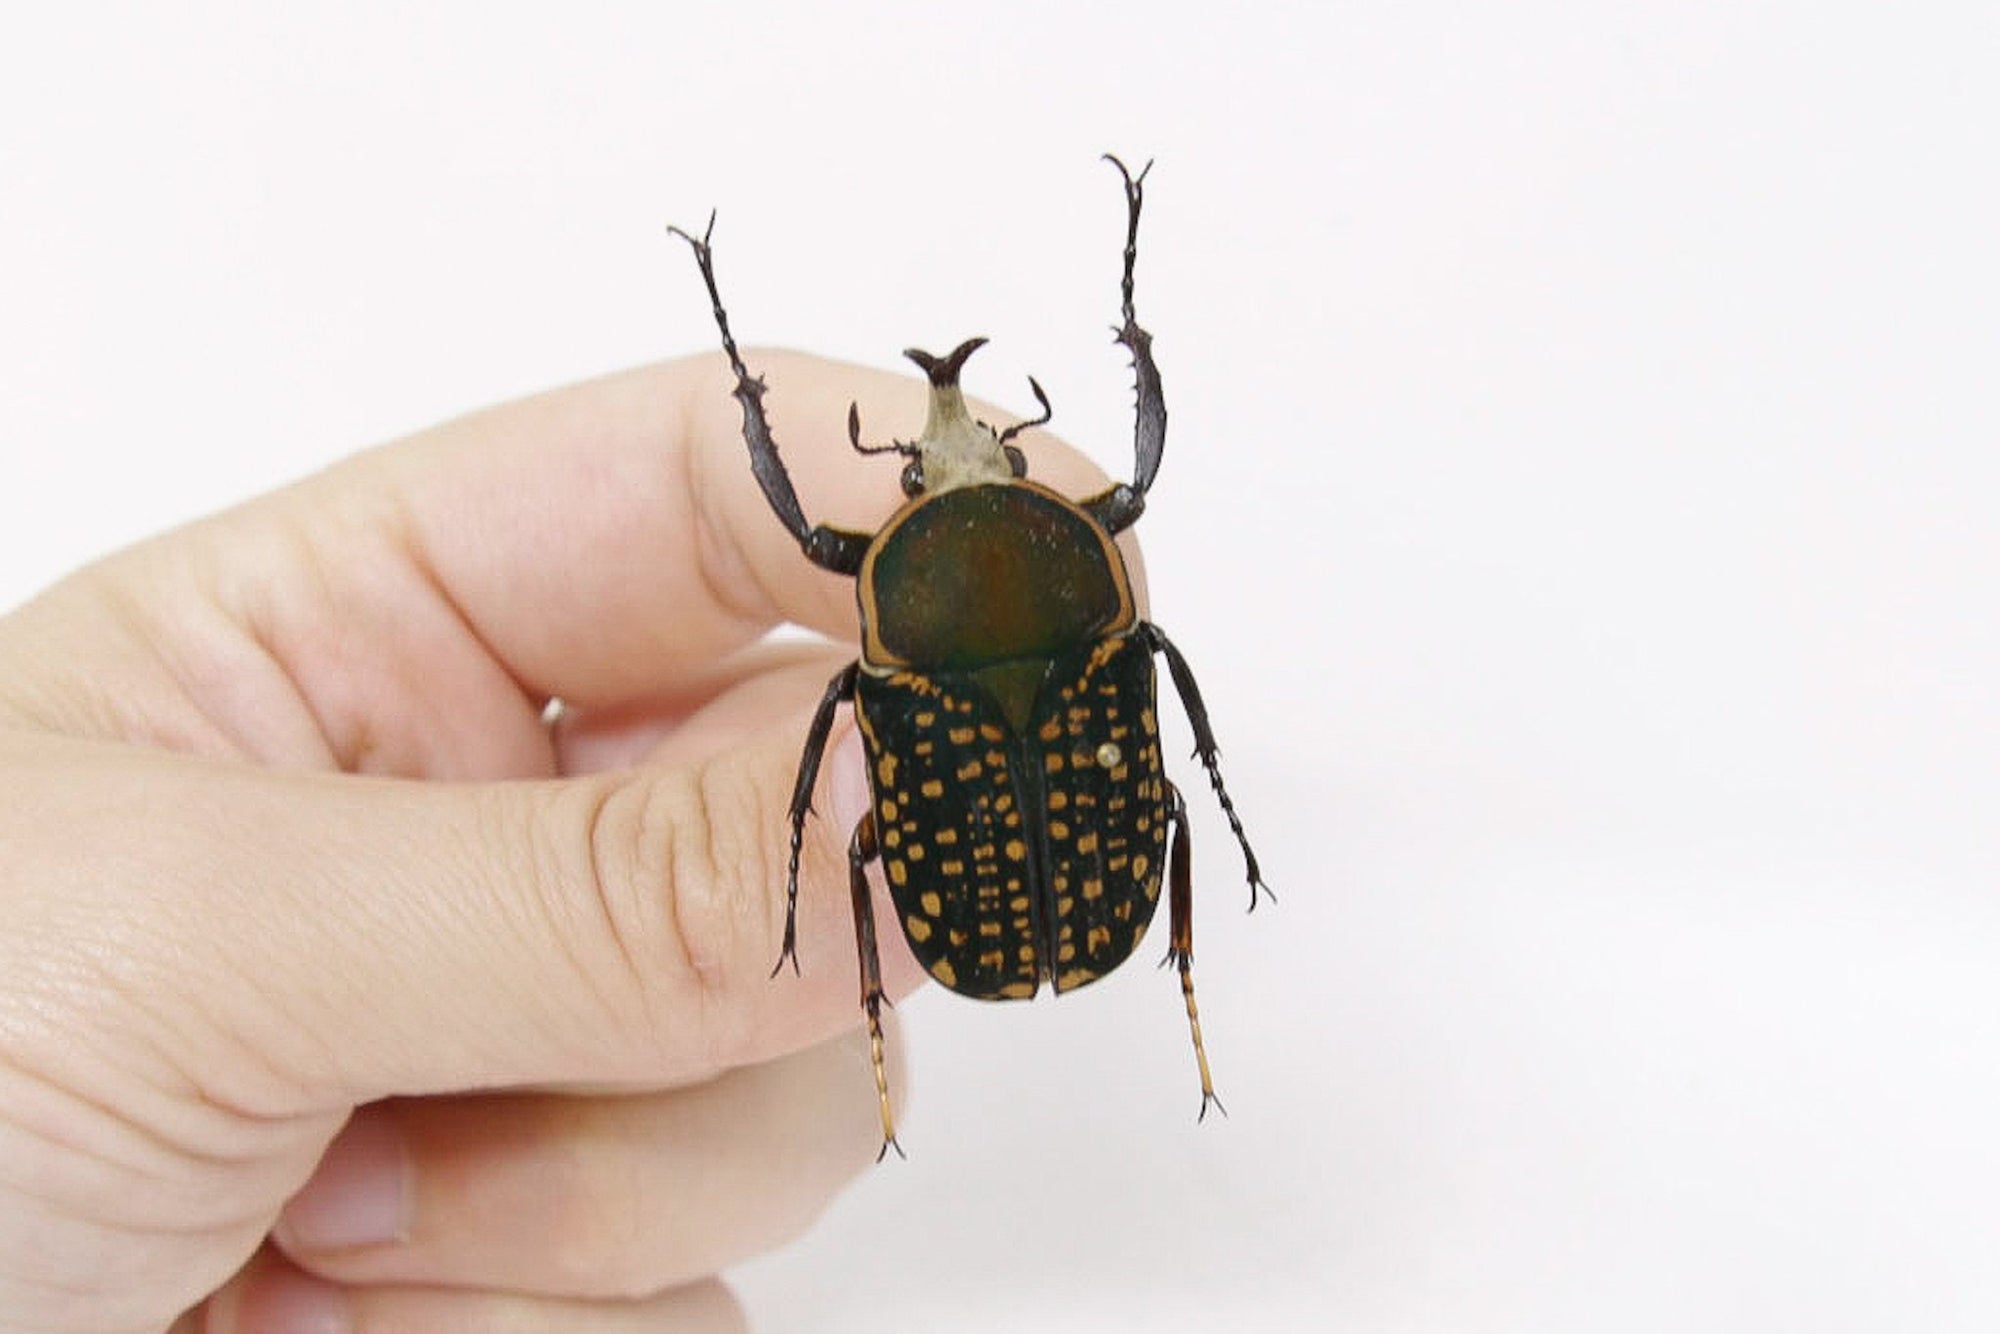 Megalorrhina harrisi 38.3m, West Uganda, A1 Real Beetle Pinned Set Specimen, Entomology Taxidermy #OC51